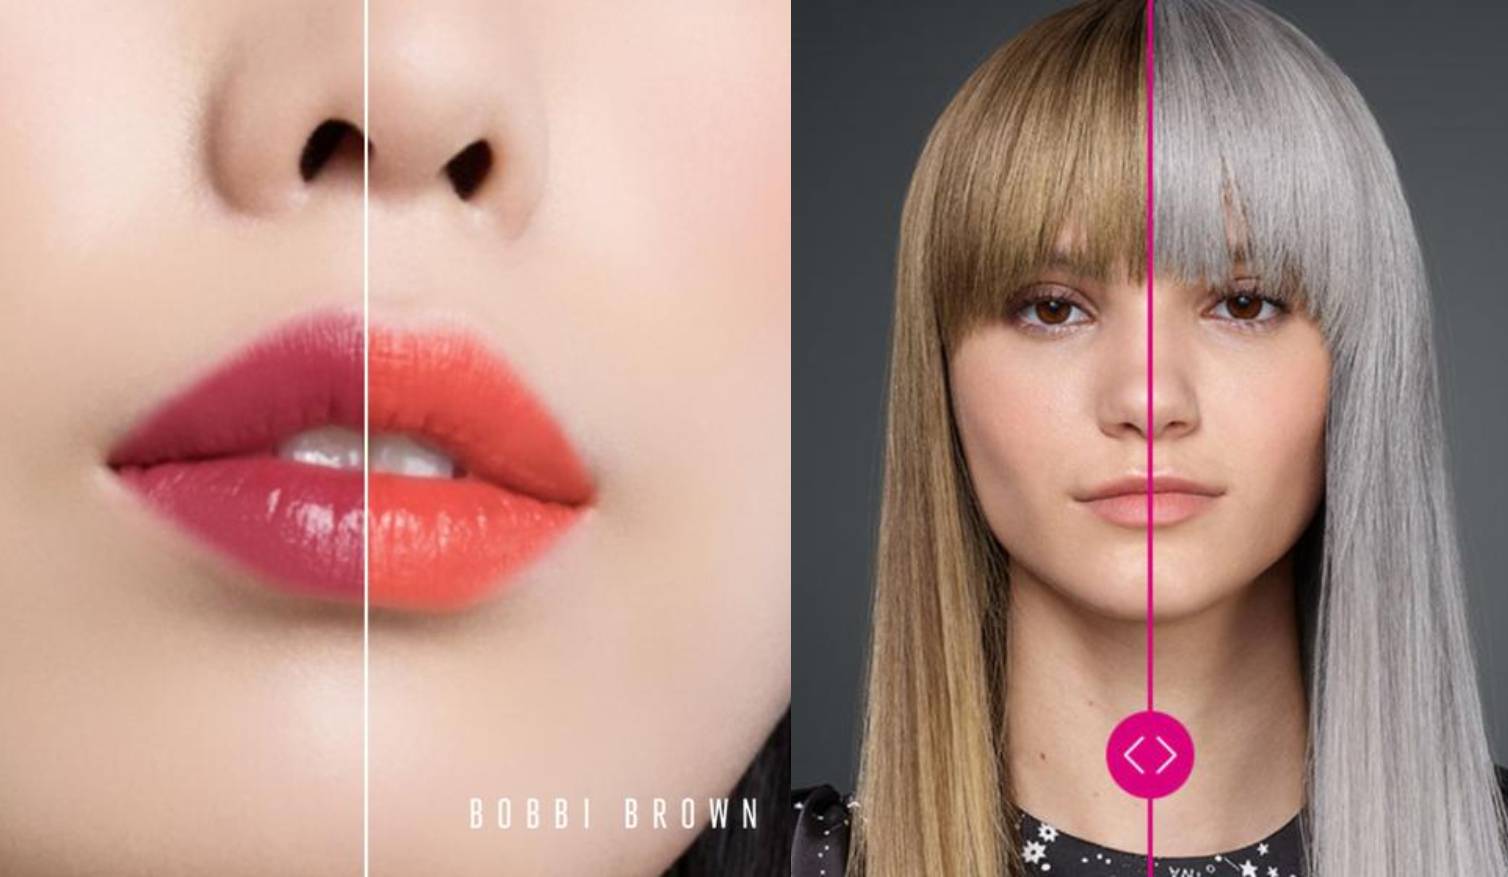 Aplikacije za online šminkanje i bojanje kose postaju popularne